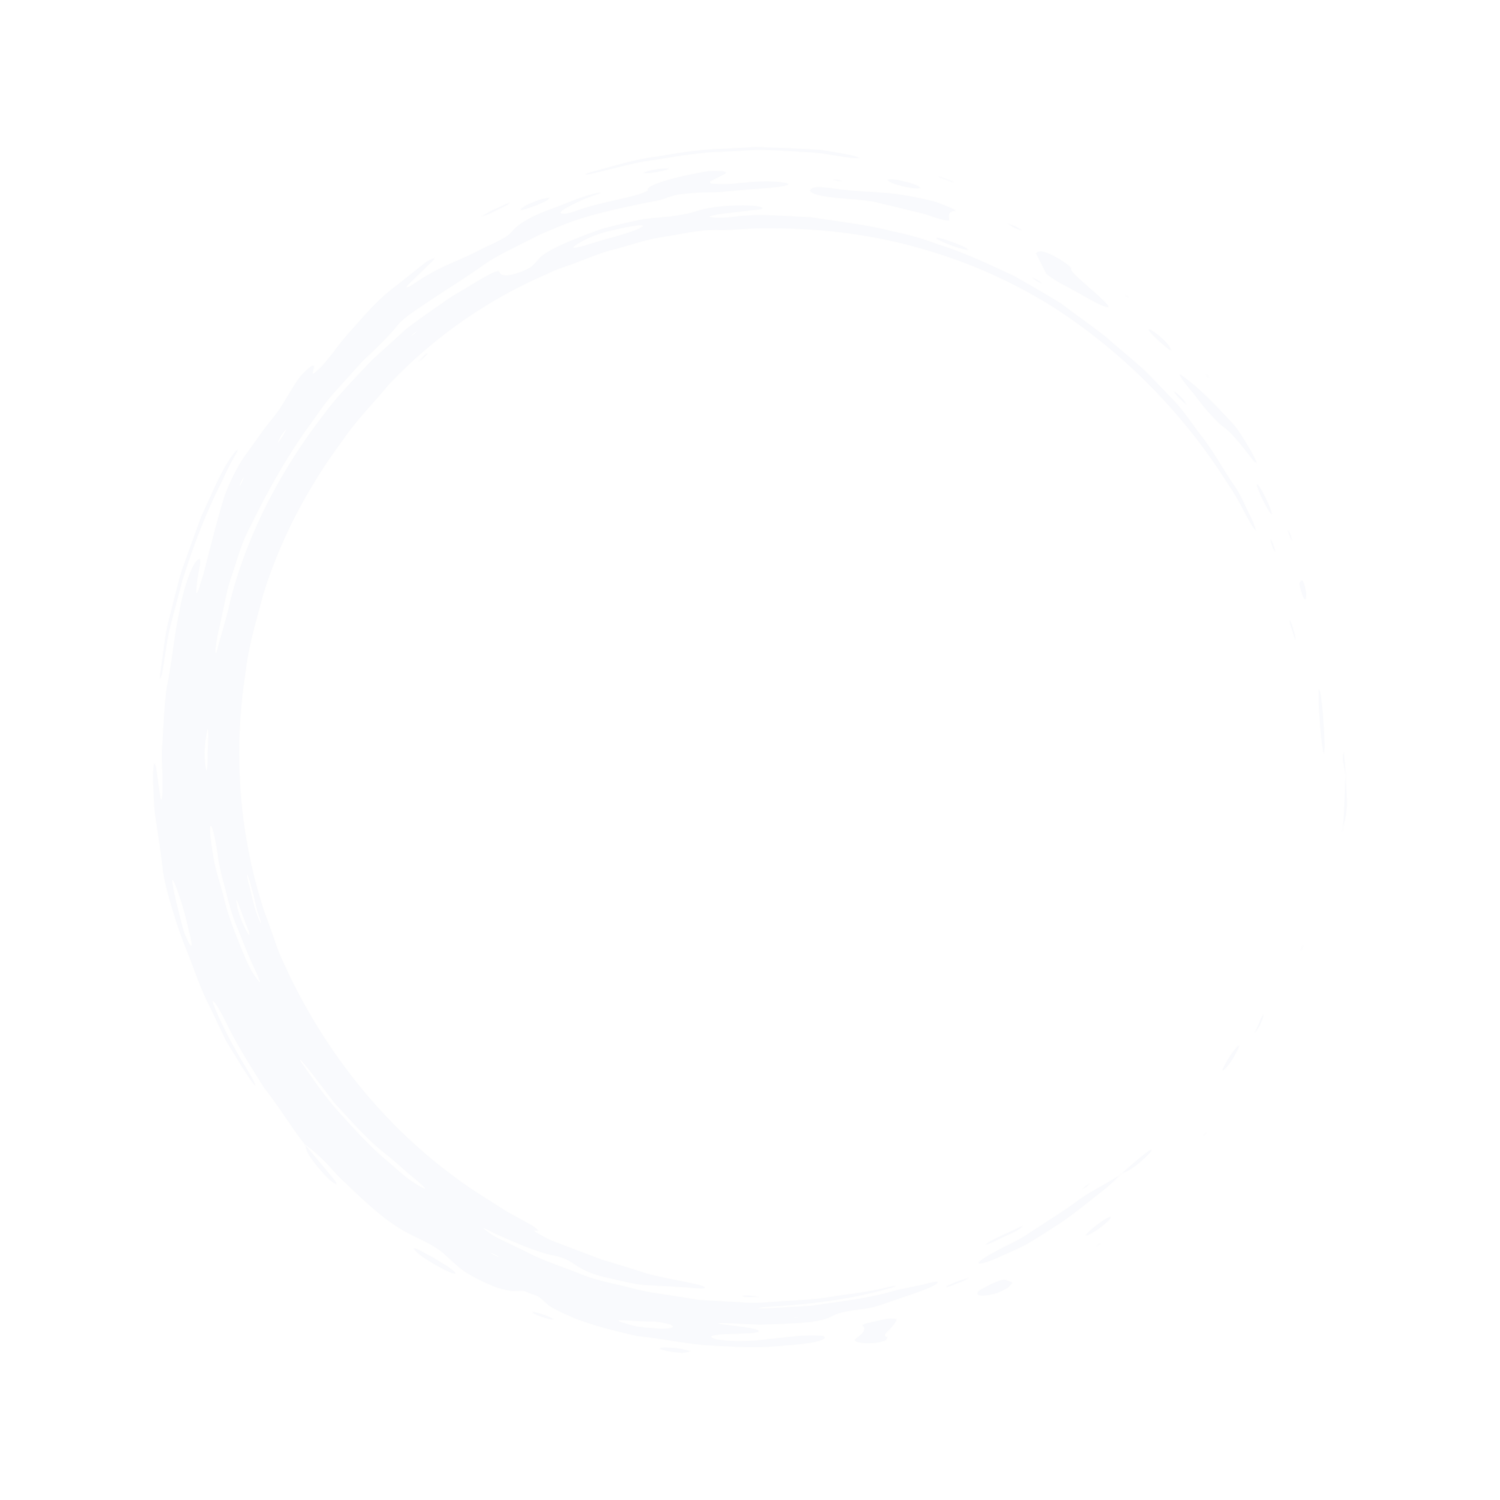 Buckner Education LLC.